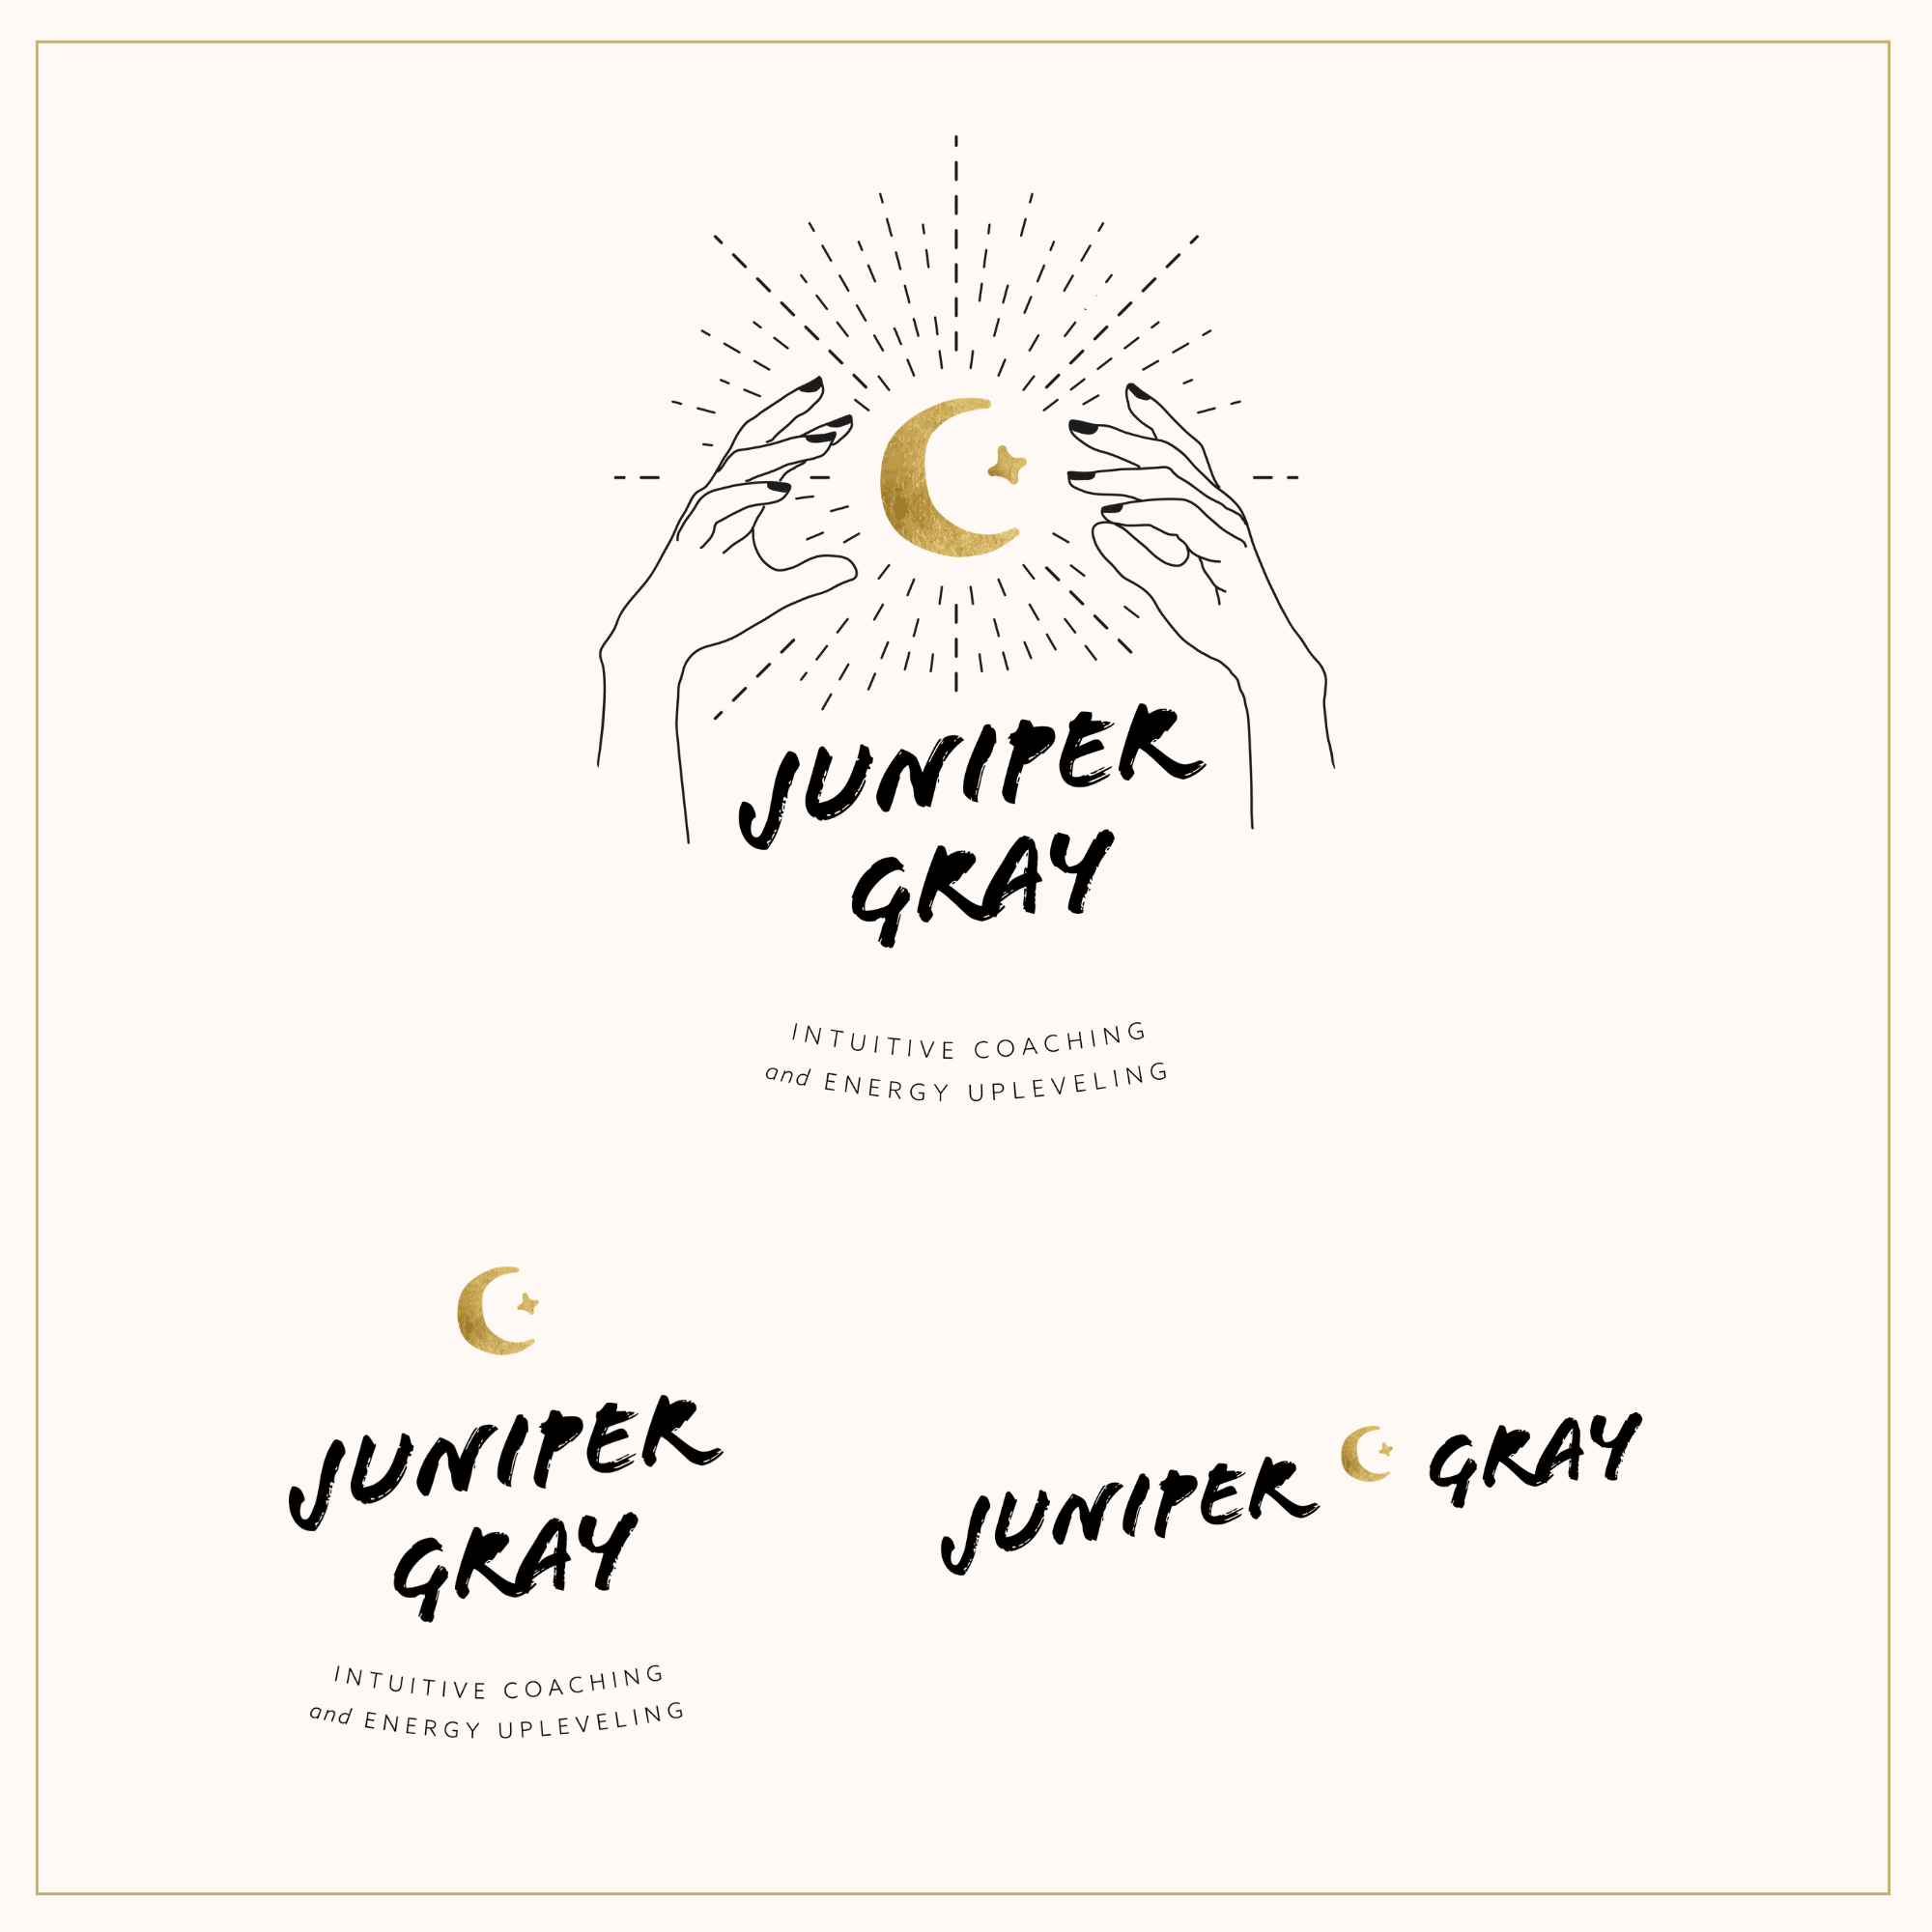 Juniper Gray semi-custom premade logo set